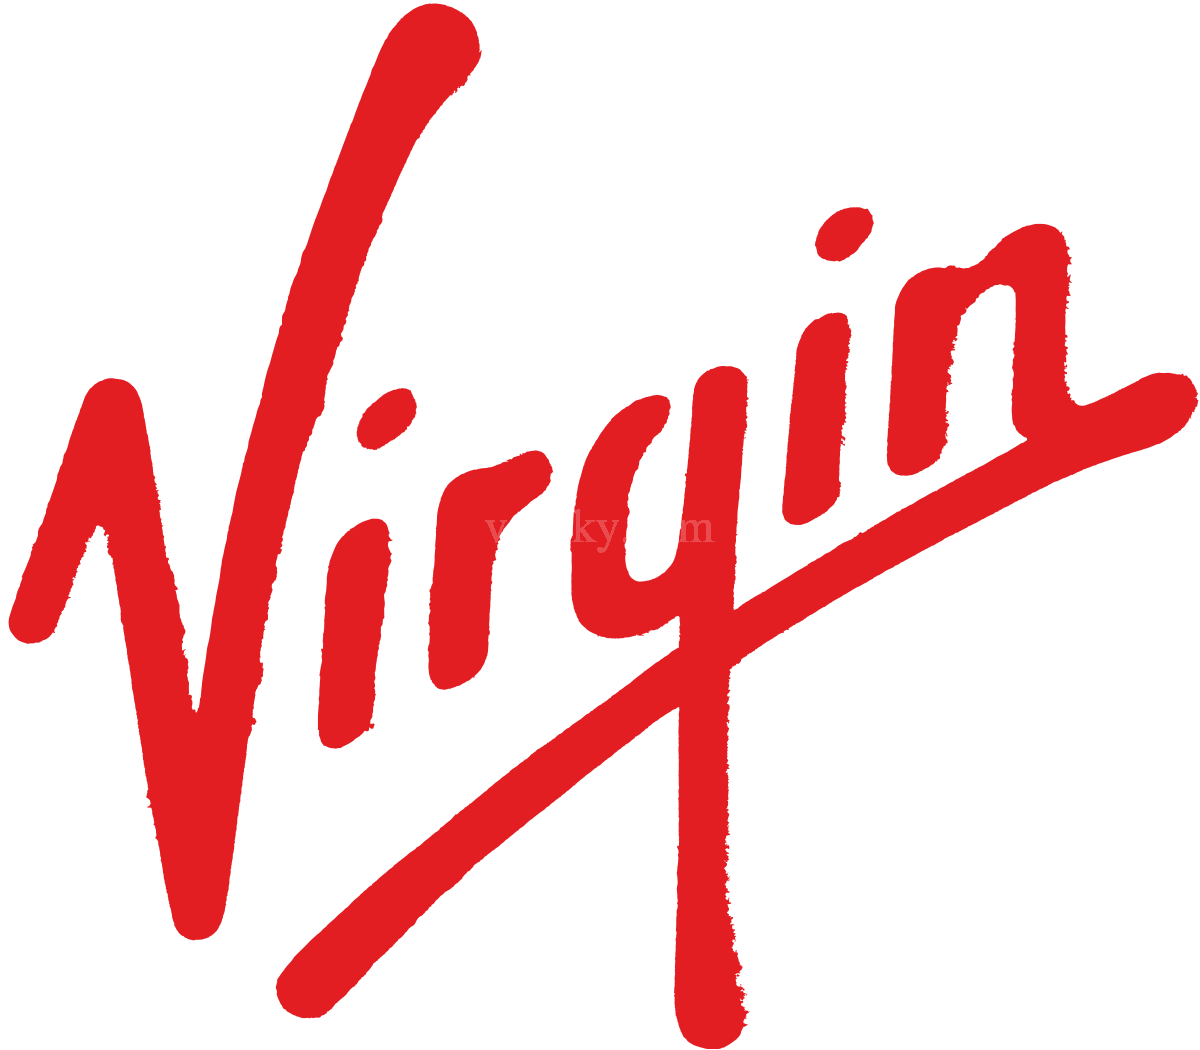 210619131152_1200px-Virgin-logo.svg.png